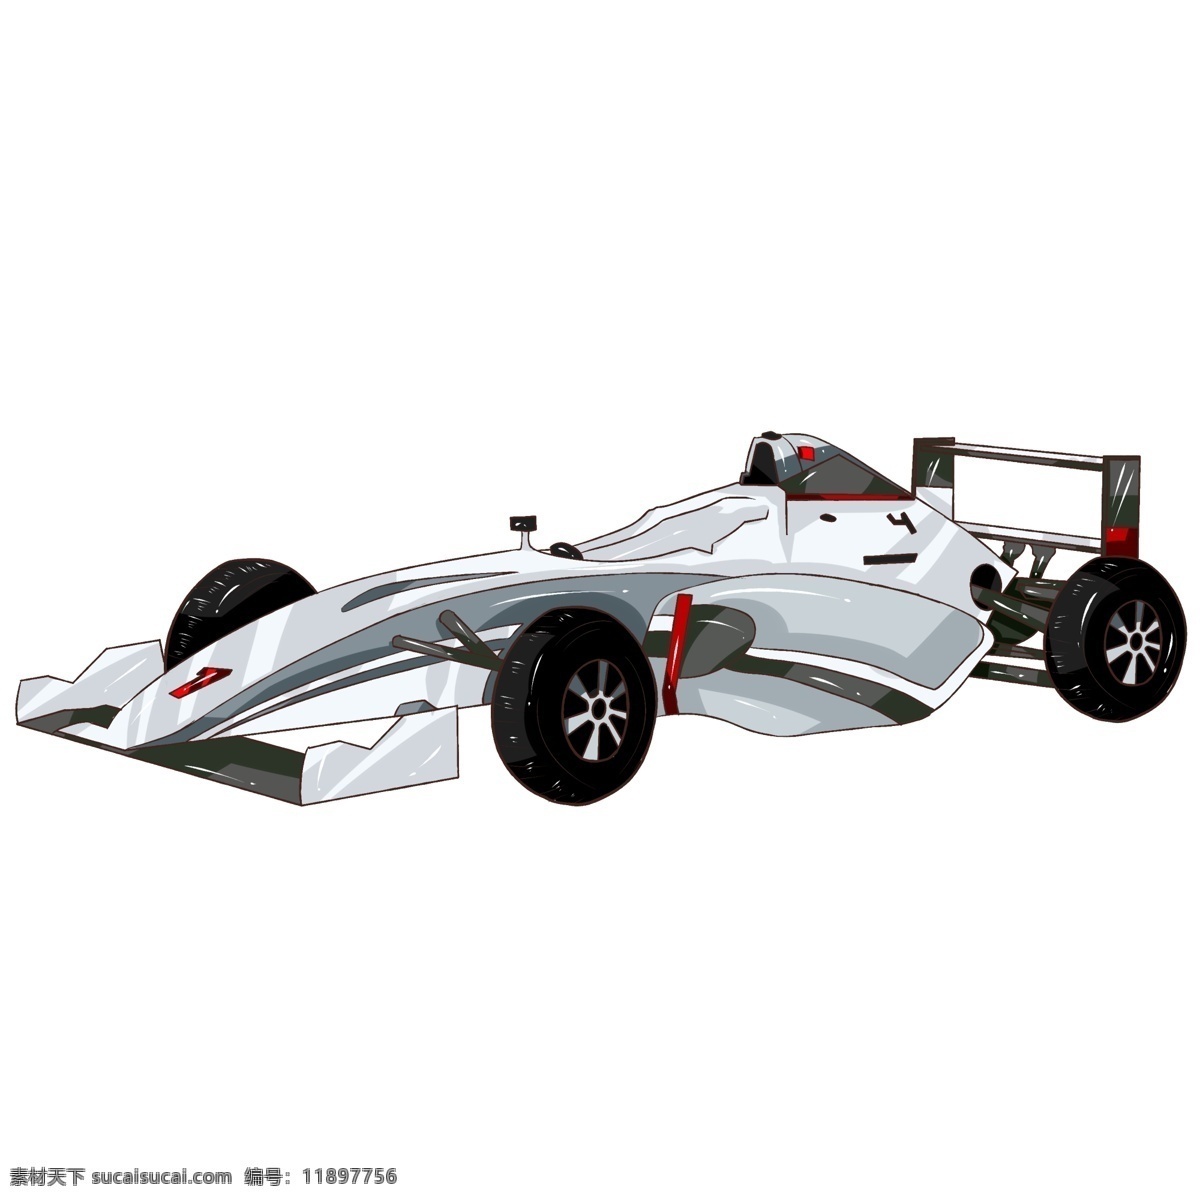 原创 手绘 交通 工具车 元素 白色 f1 赛车 车 海报素材 插画 交通工具